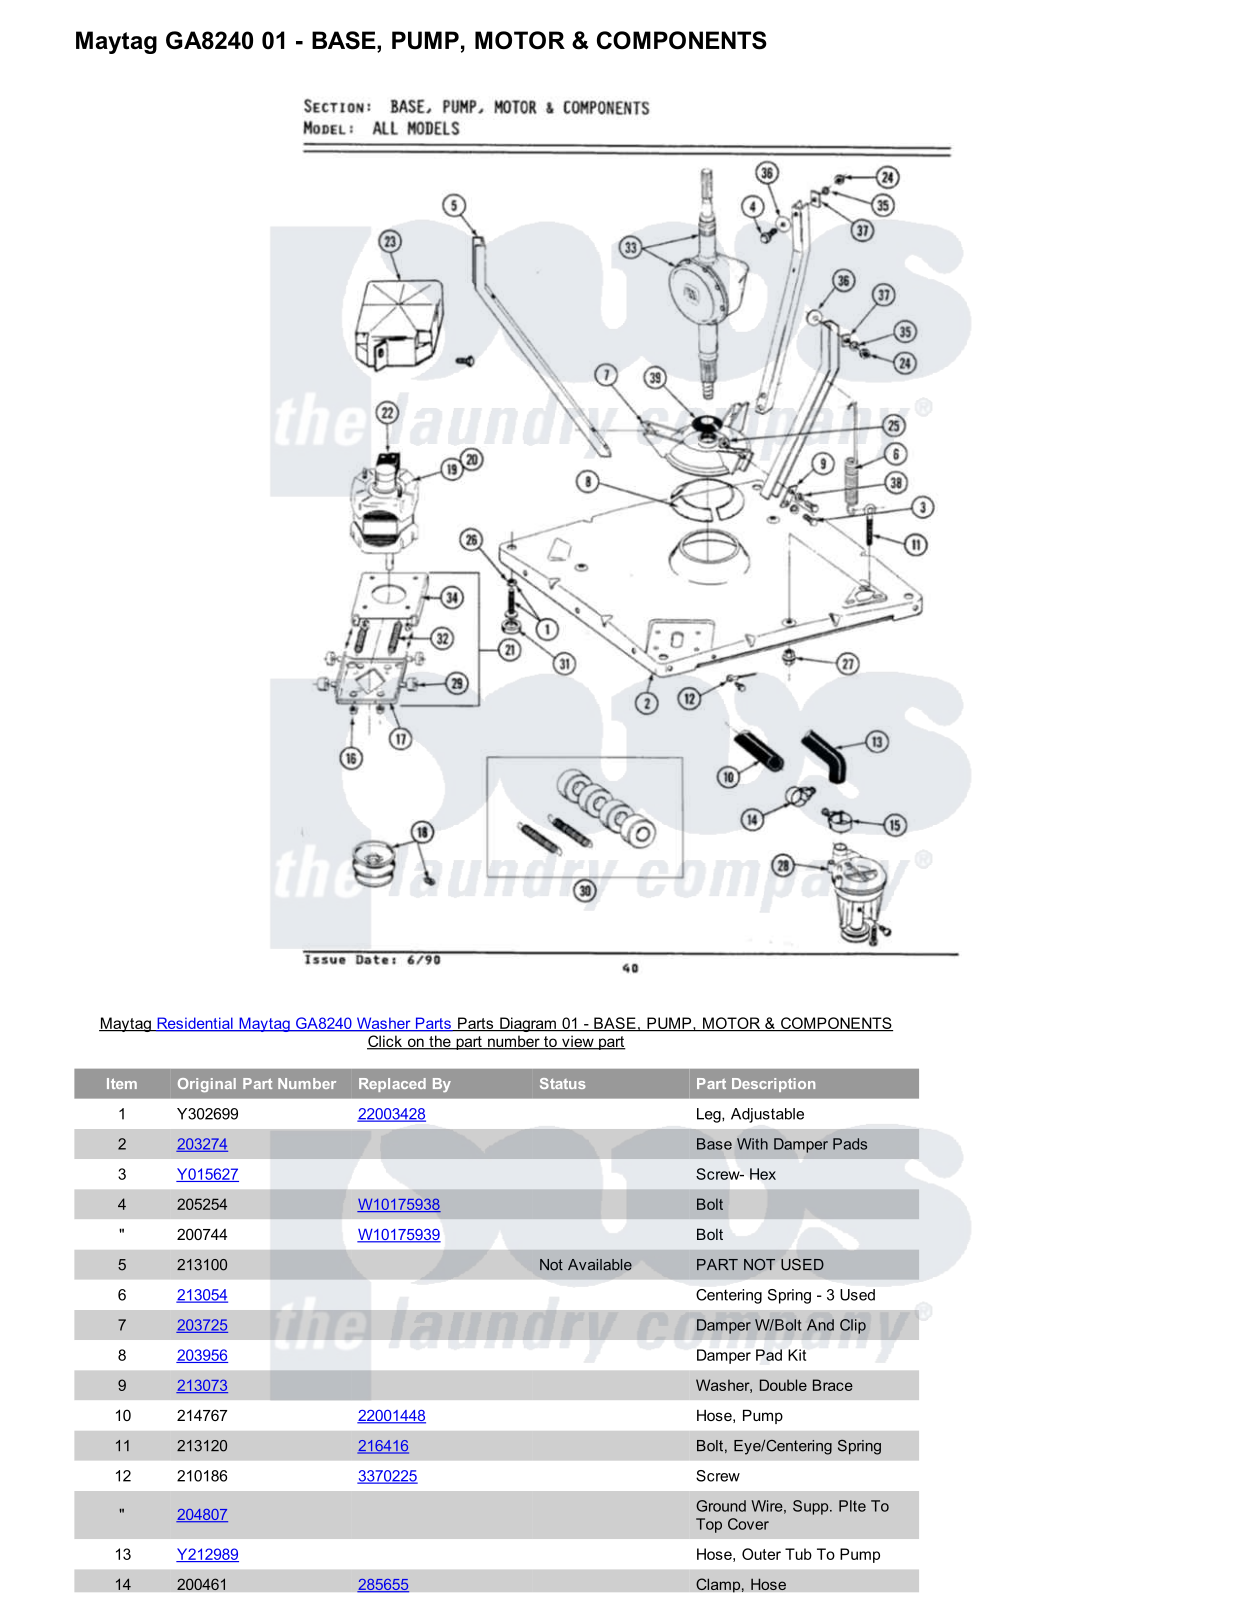 Maytag GA8240 Parts Diagram